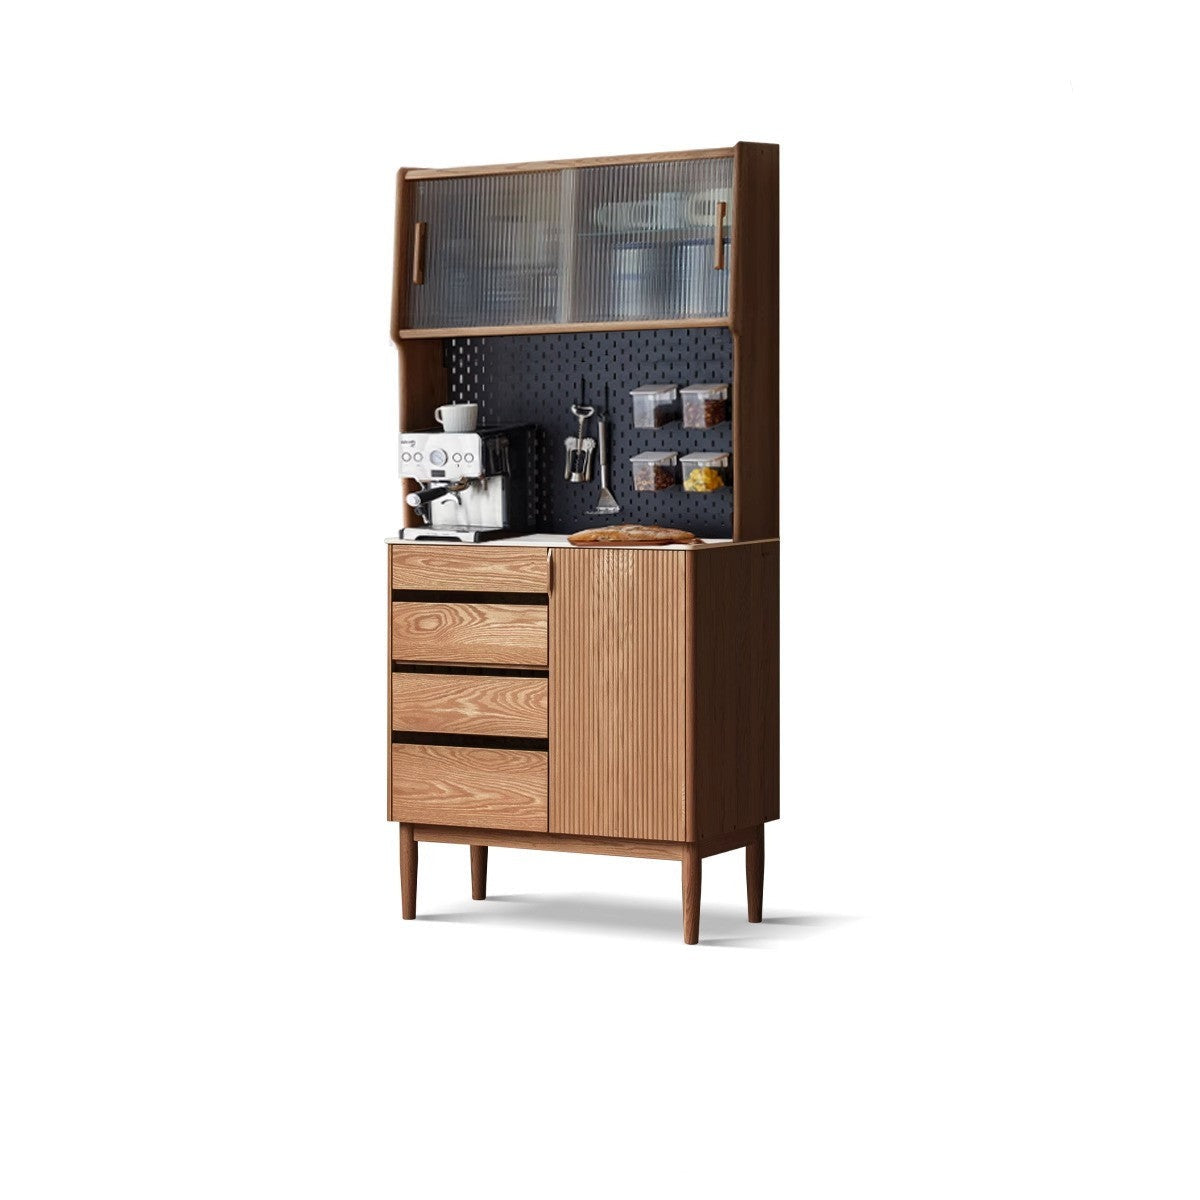 Oak solid wood modern rock board side high tea cabinet Buffet"